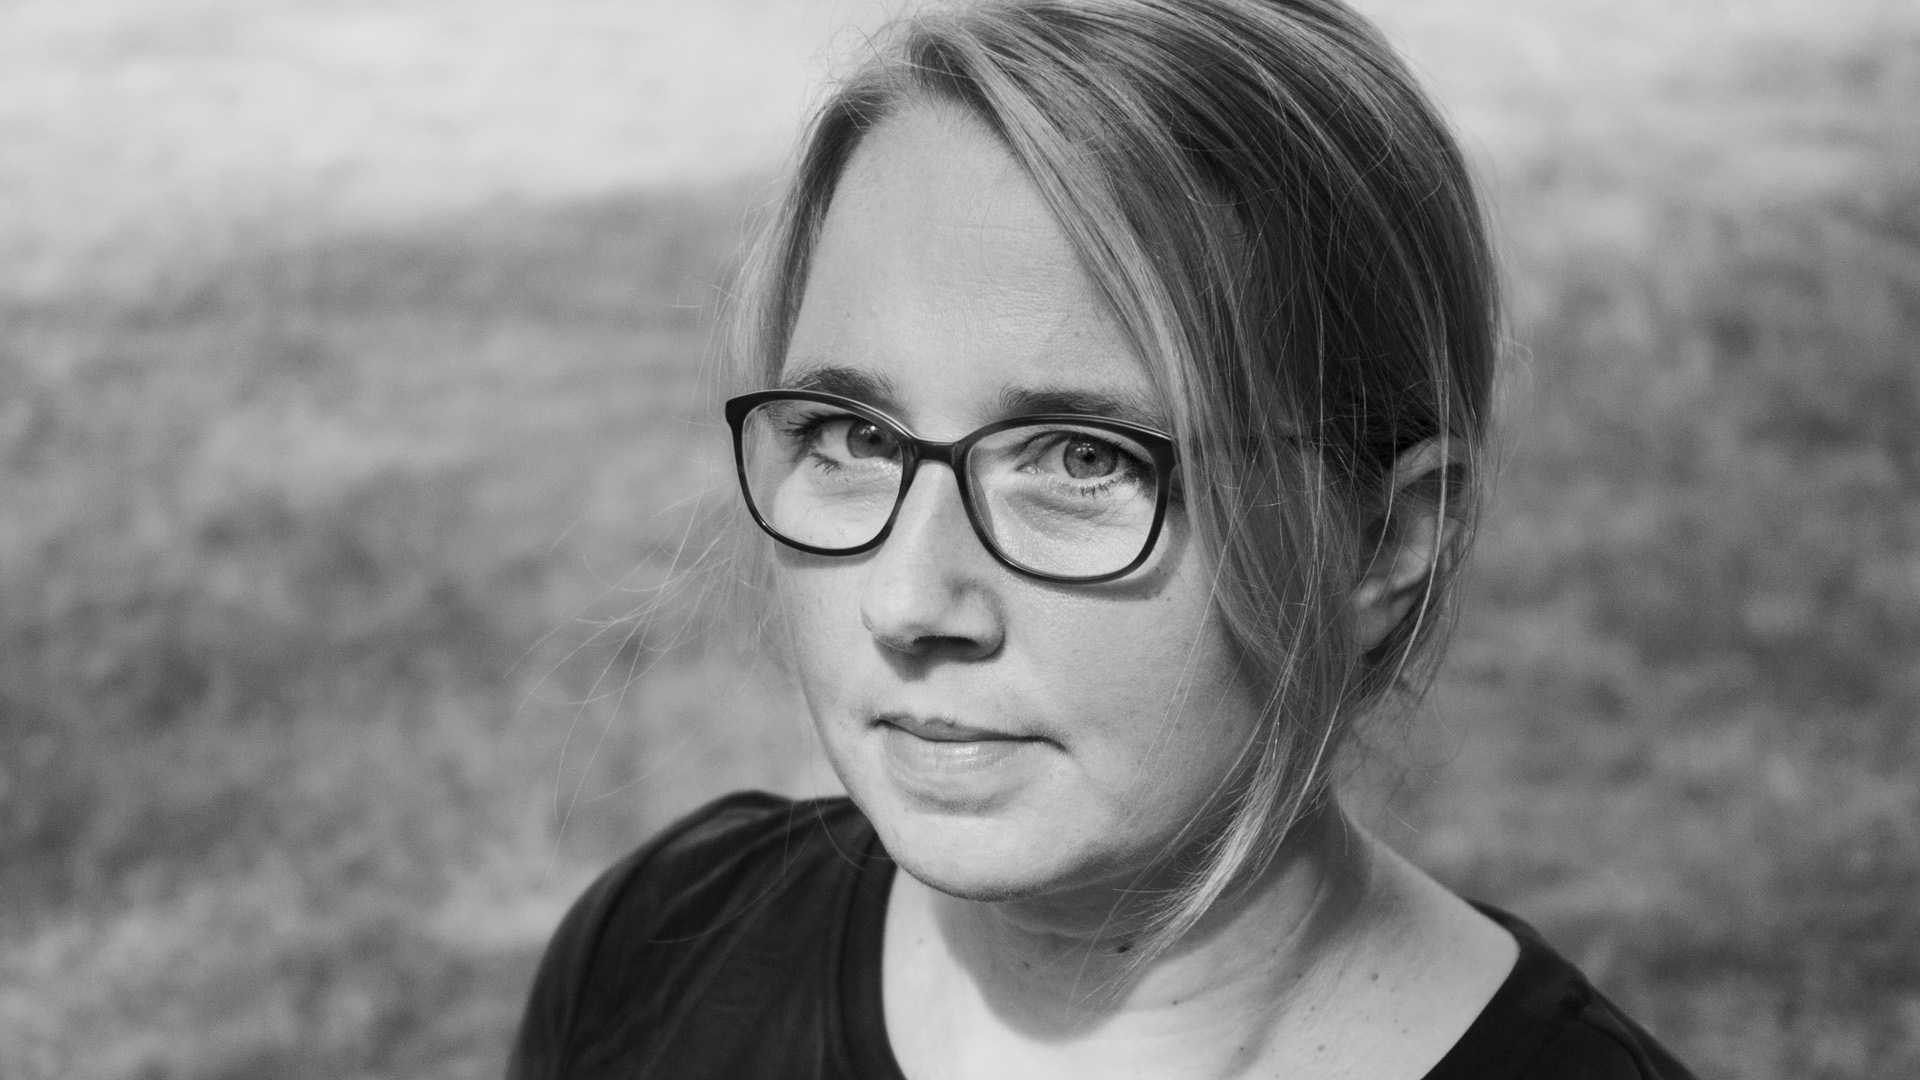 Portraitbild von Karolin Viseneber. Sie hat ihre blonden Haare zusammengebunden und trägt eine Brille